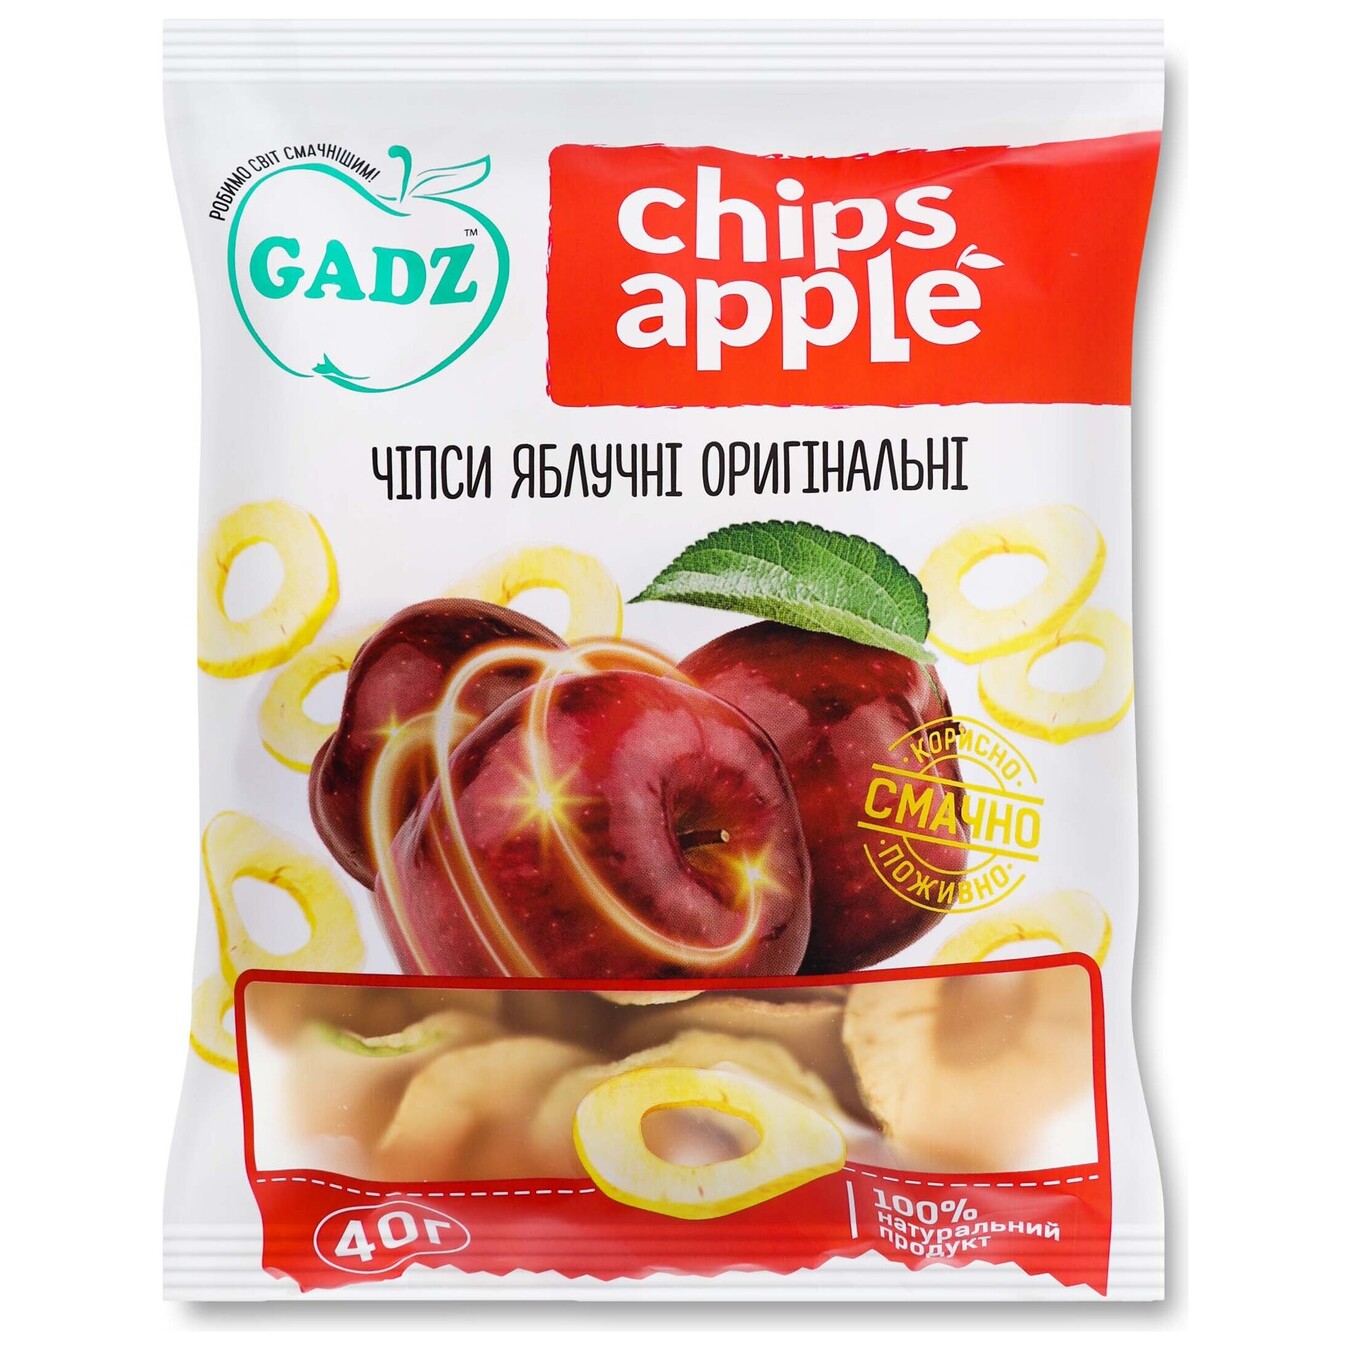 Чіпси GADZ яблучні оригінальні 40г